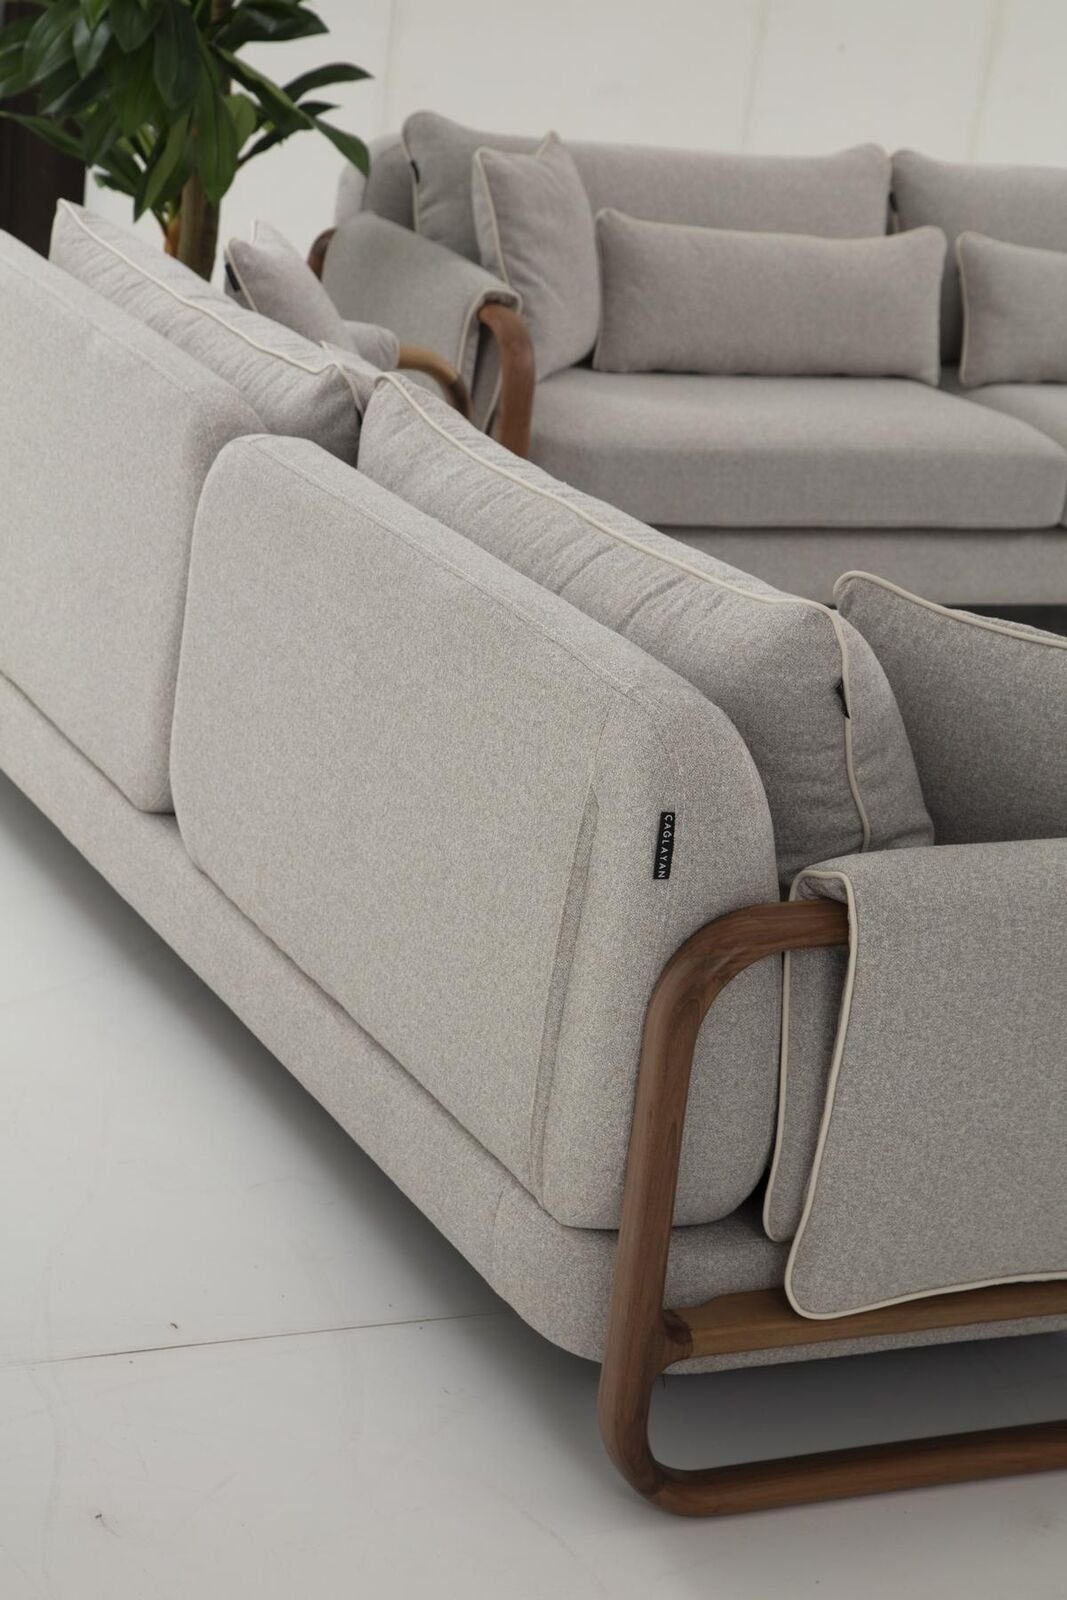 JVmoebel 1 in 2-Sitzer Made Sofas Stoff 2 Zweisitzer Neu, Sitzer Design Teile, Modern Europa Wohnzimmer Sofa Grau